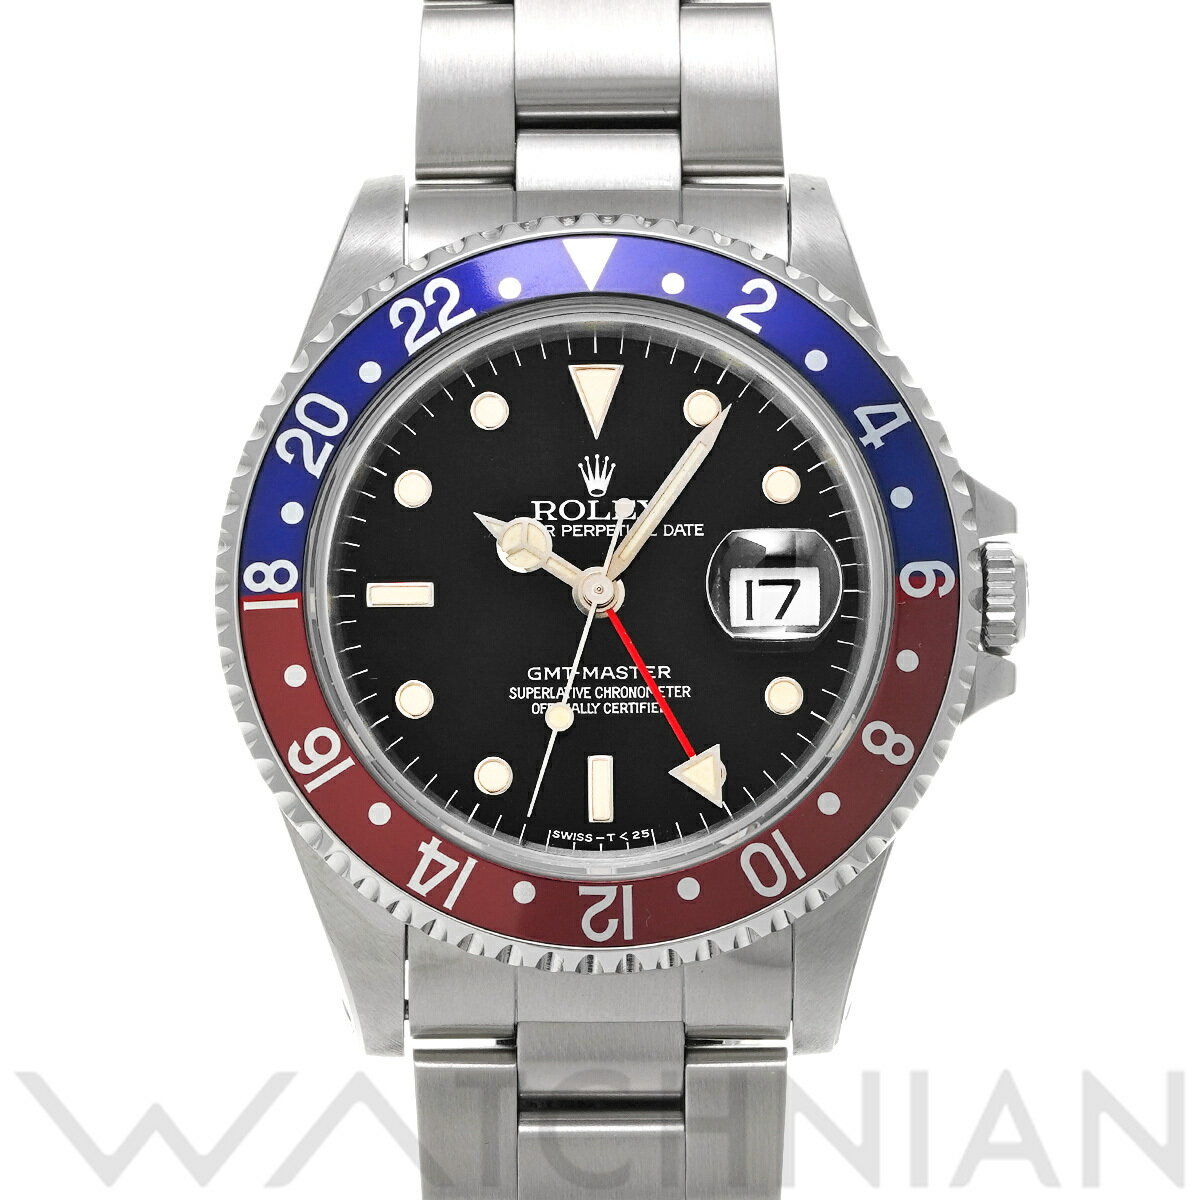 【5種選べるクーポン】【ローン60回払い無金利】【中古】 ロレックス ROLEX GMTマスター 16700 X番(1991年頃製造) ブラック メンズ 腕時計 ロレックス 時計 高級腕時計 ブランド